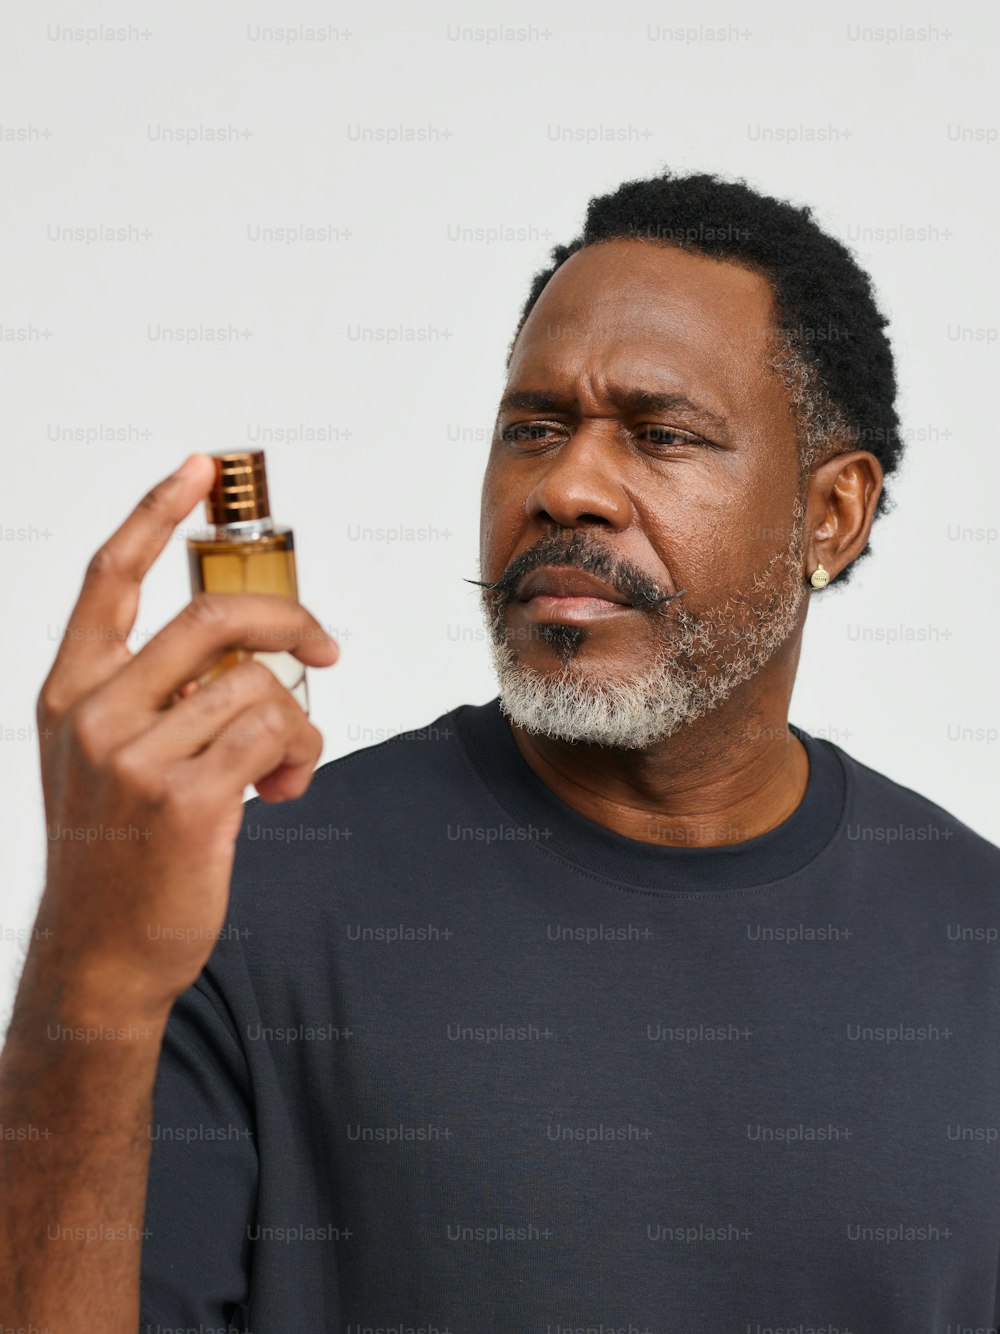 Un hombre sosteniendo un frasco de perfume en la mano